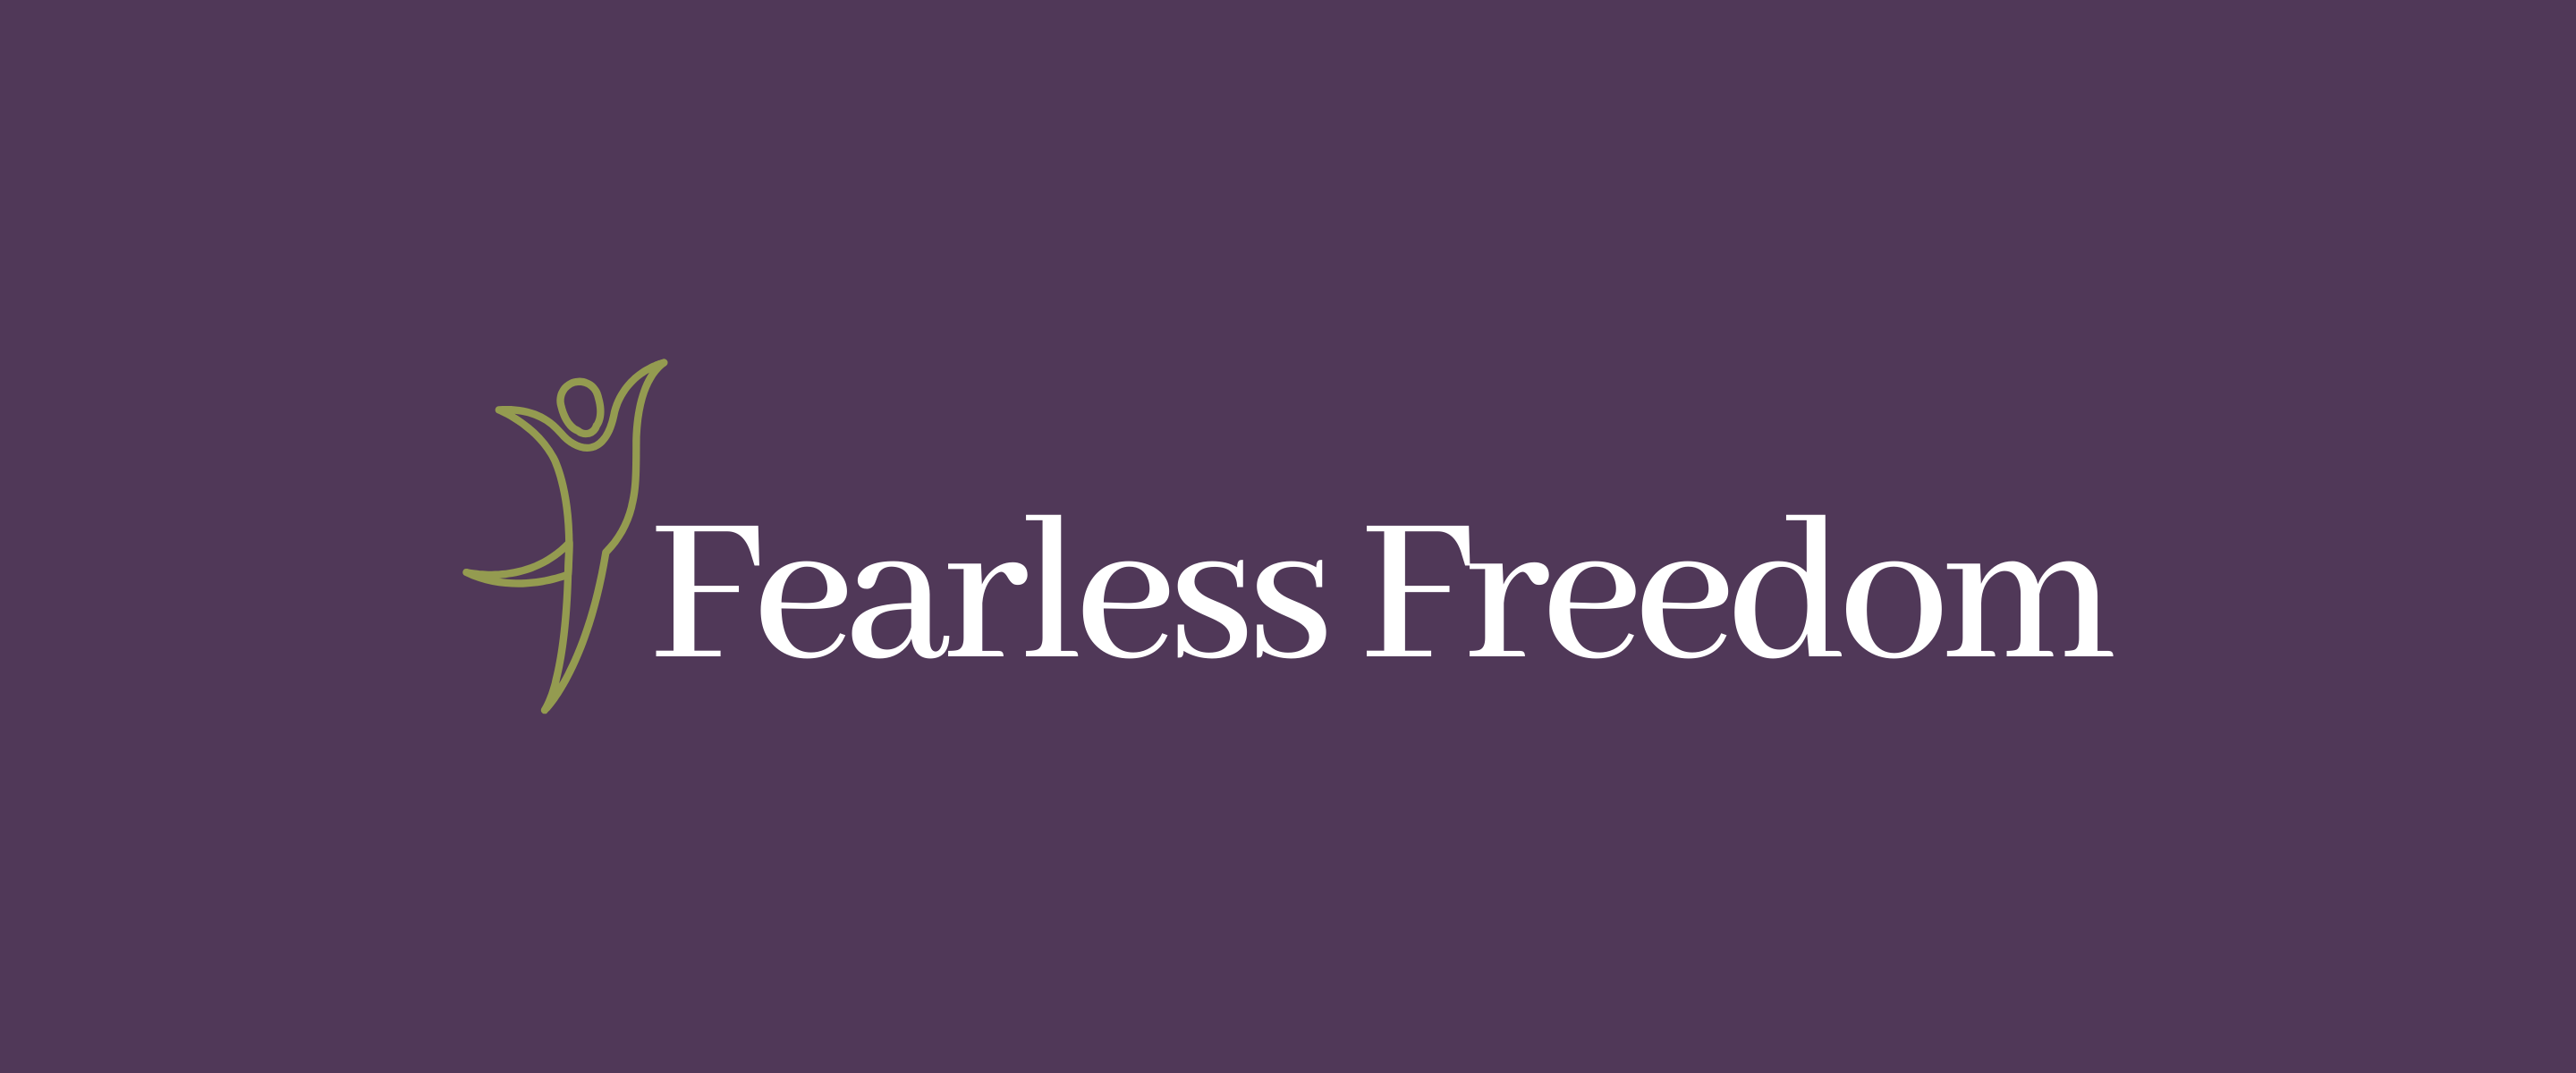 Fearless Freedom logo